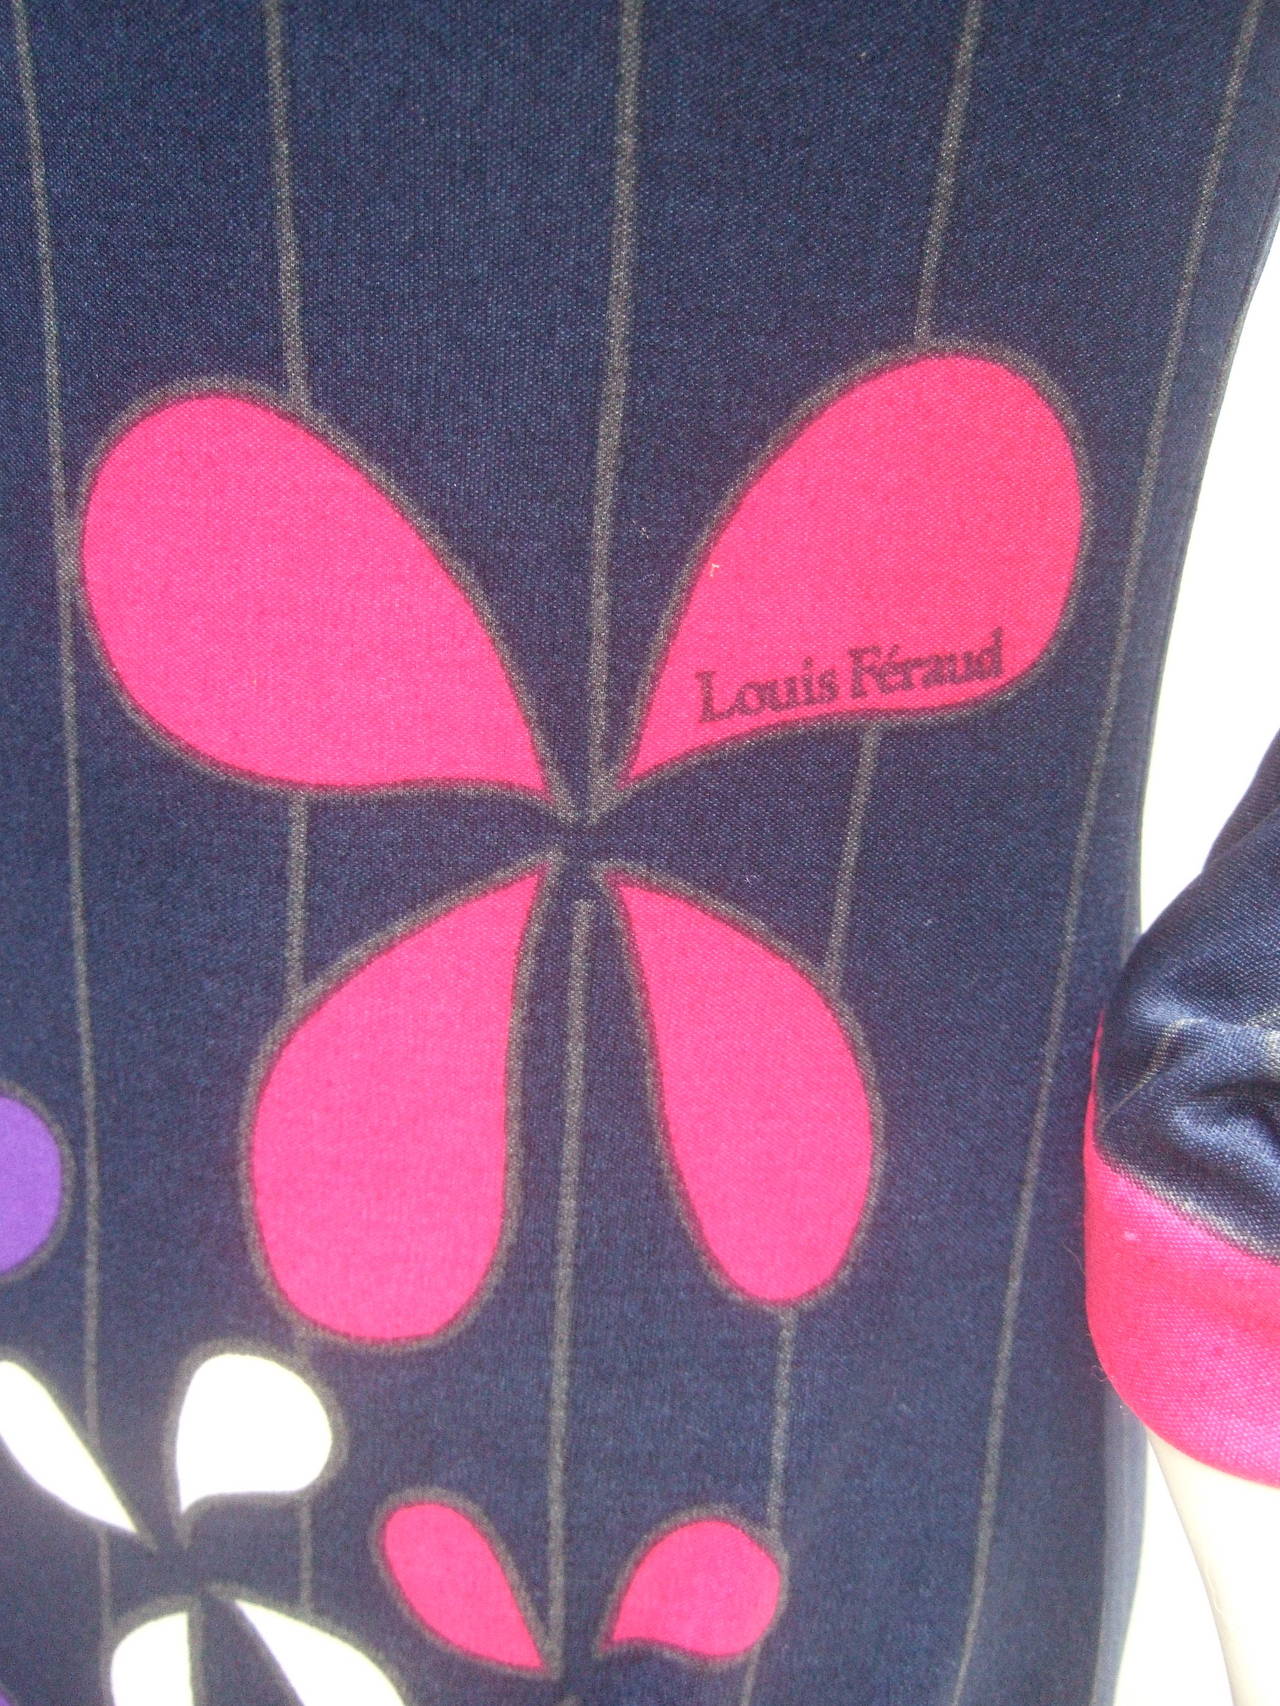 Louis Feraud Paris Fabulous Mod Jersey Knit Print Maxi Gown c 1960s 2